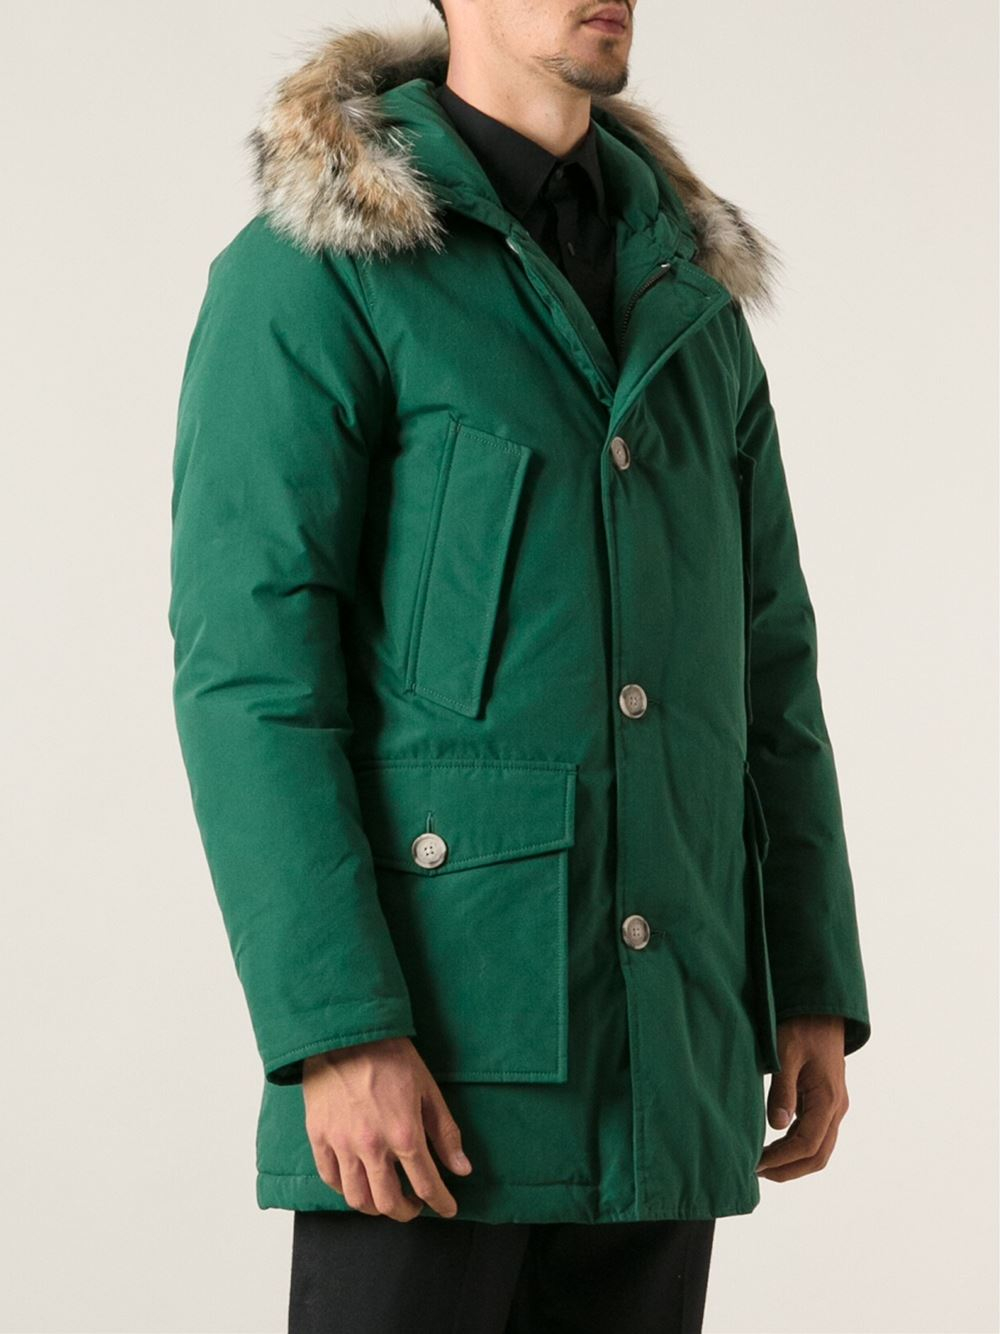 Woolrich Faux Fur Hood Parka in Green for Men - Lyst